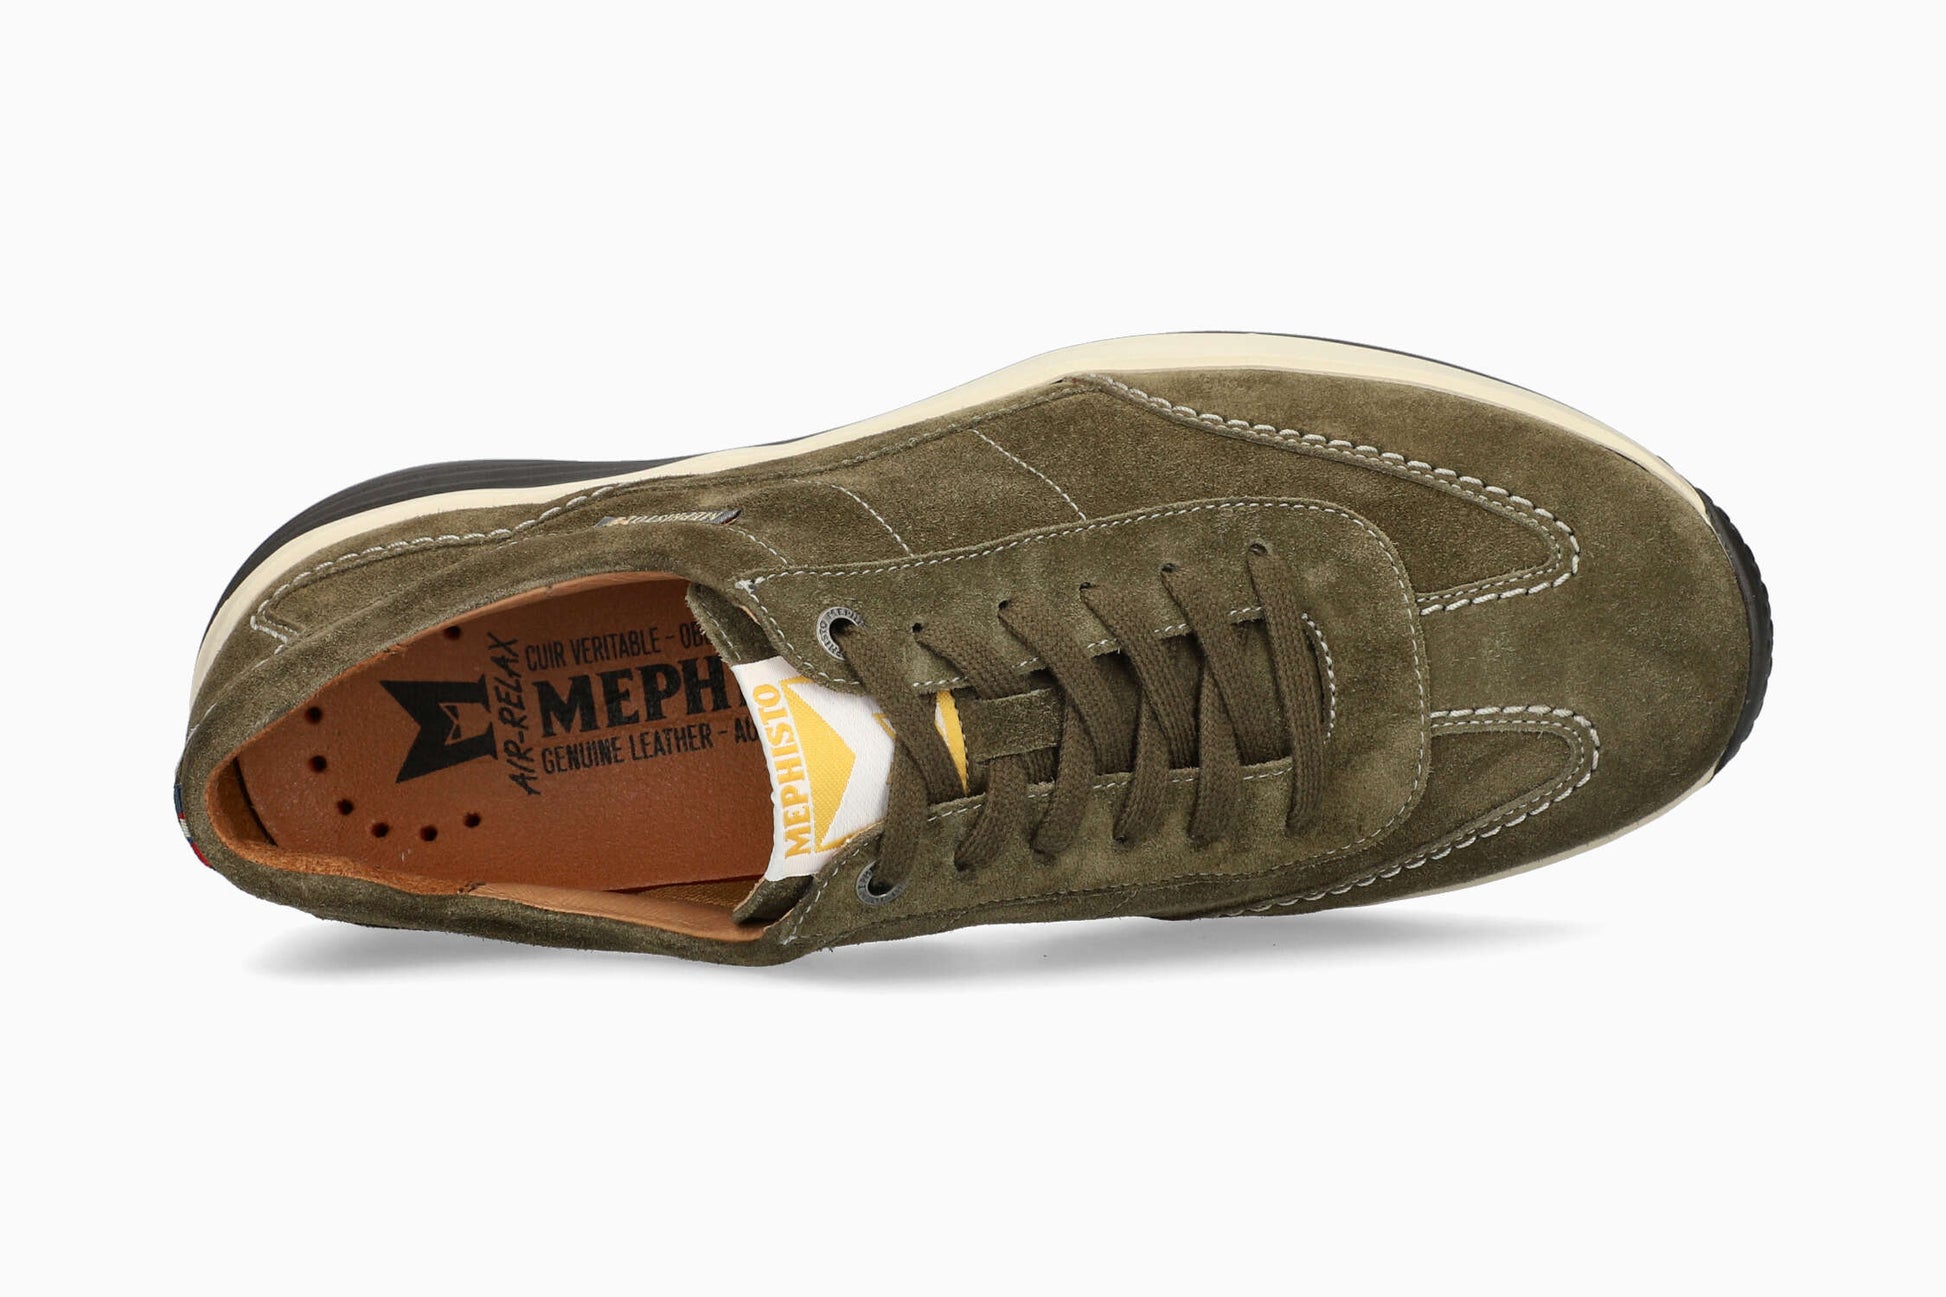 Mephisto Steve Men's Sneaker - Khaki - Top